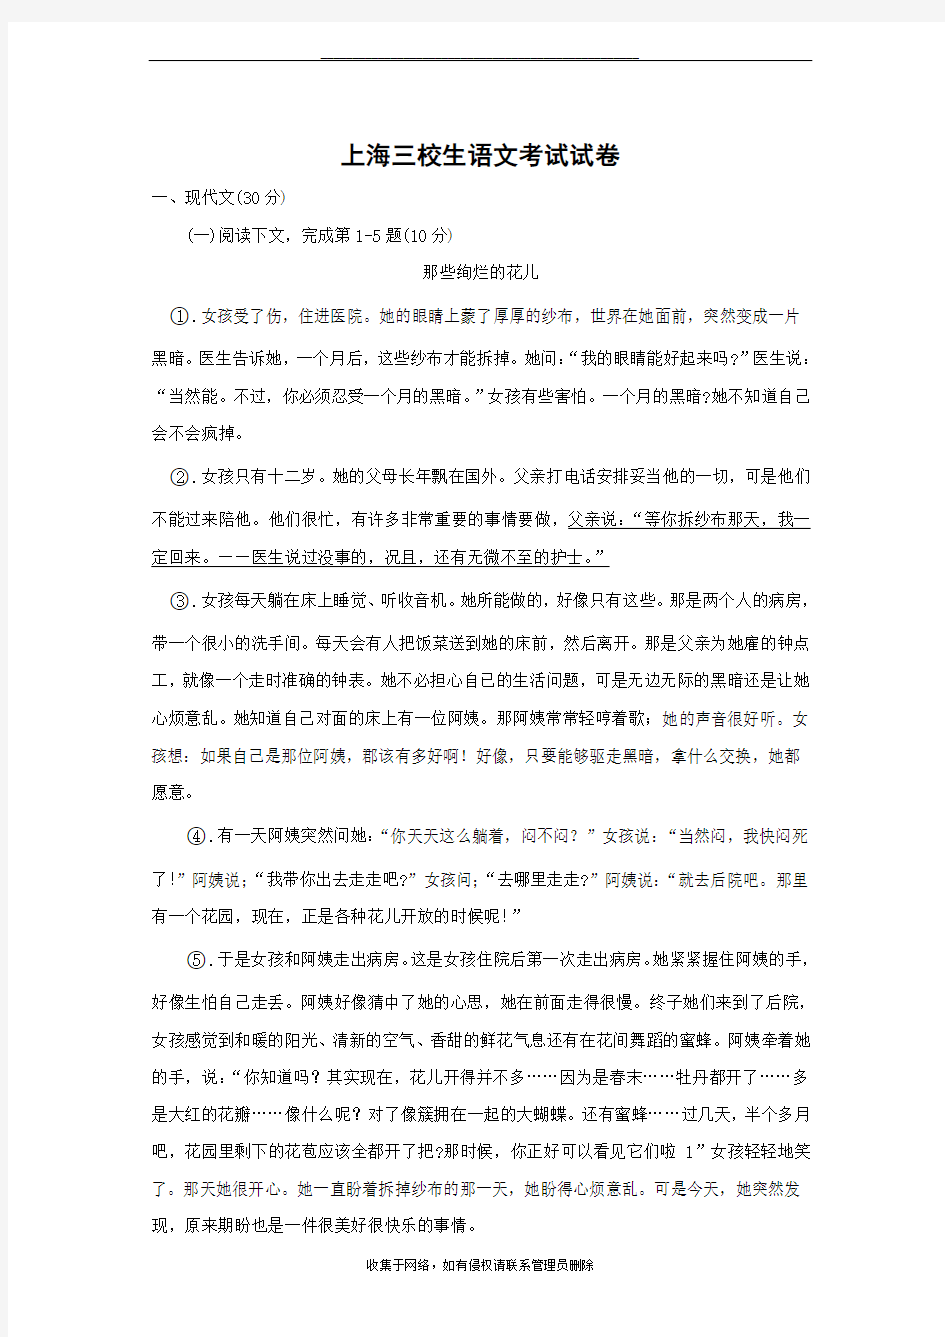 最新上海三校生语文考试试卷